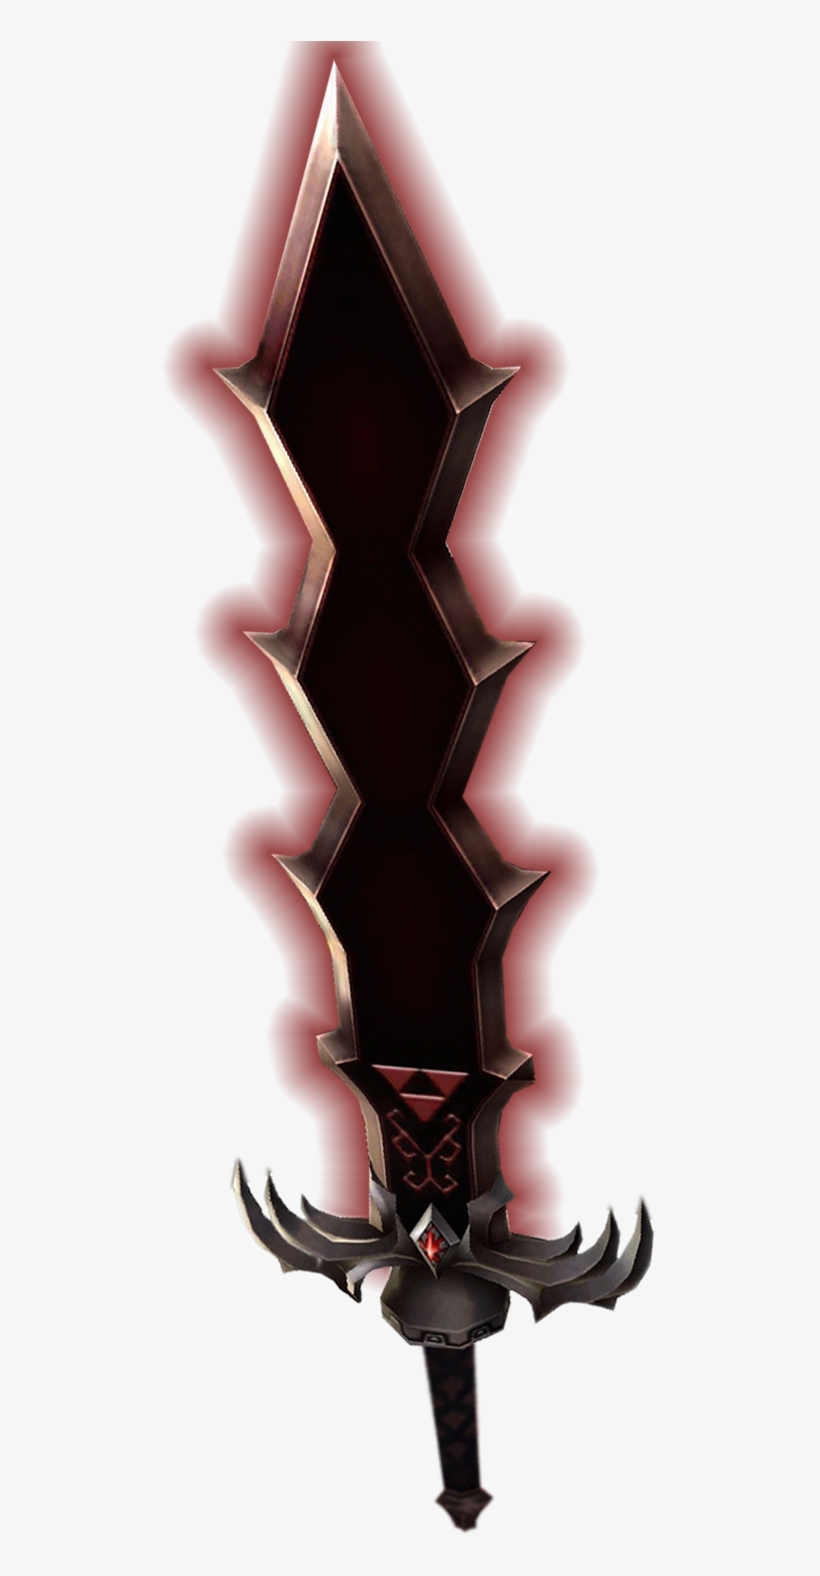 Skyward Sword Ghirahim Sword Form, transparent png #599796